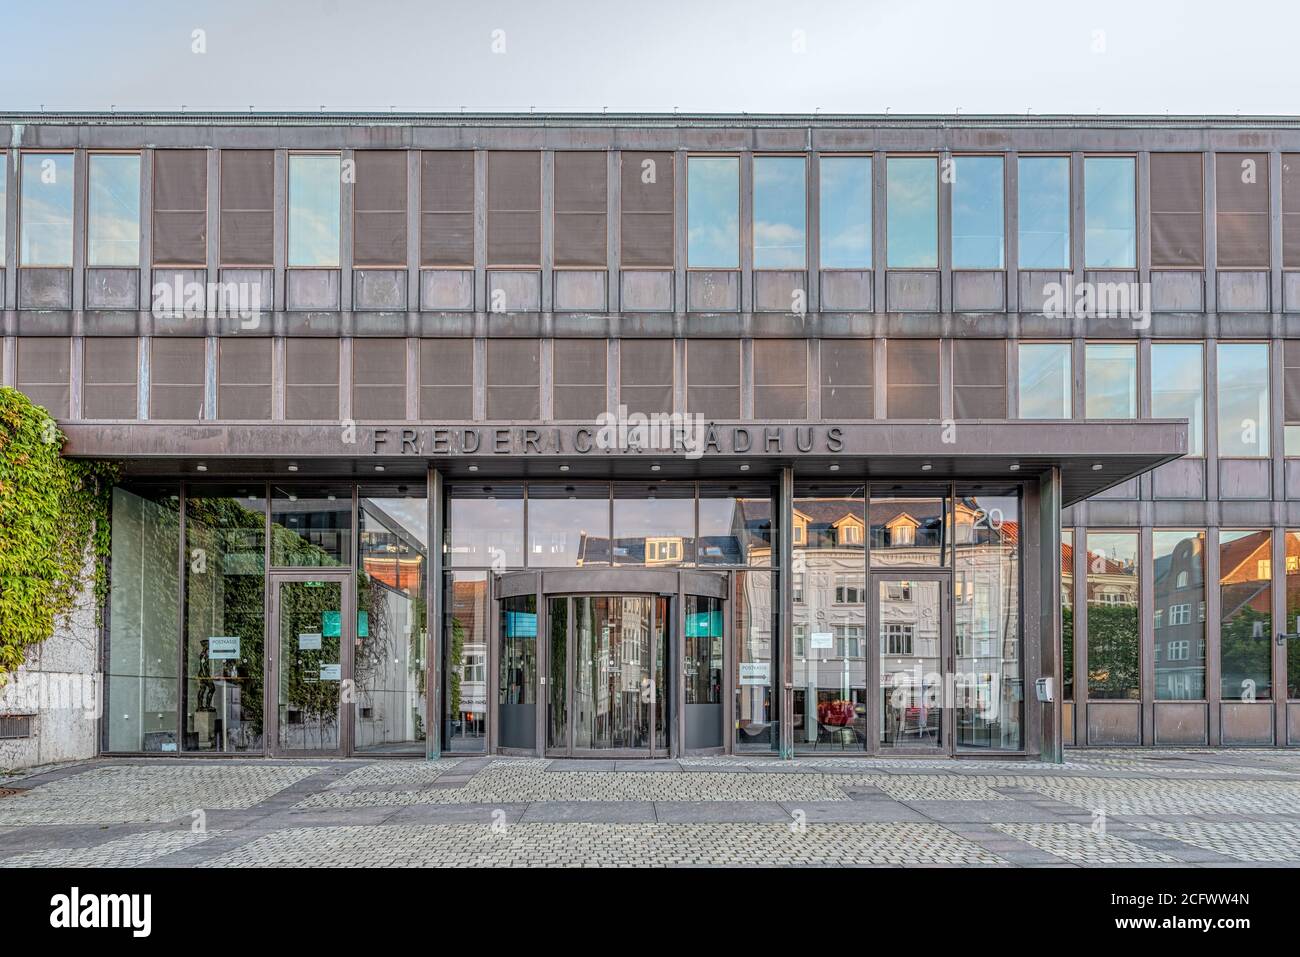 Ingresso al moderno municipio di fredericia, Danimarca, 8 giugno 2020 Foto Stock